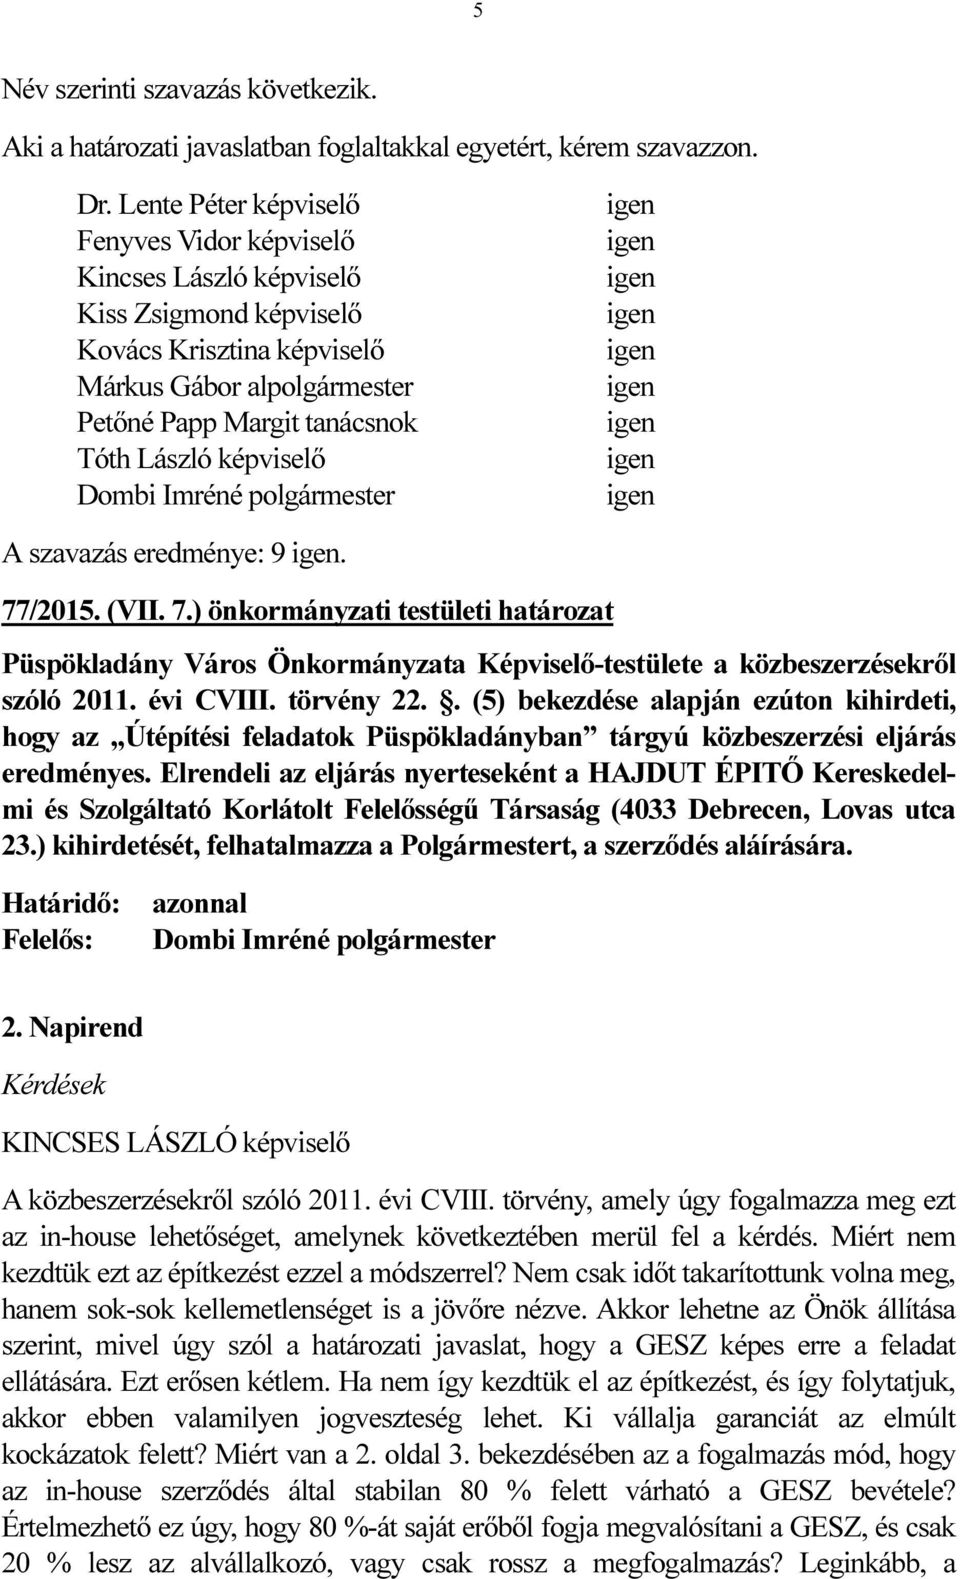 képviselő Dombi Imréné polgármester A szavazás eredménye: 9. 77/2015. (VII. 7.) önkormányzati testületi határozat Püspökladány Város Önkormányzata Képviselő-testülete a közbeszerzésekről szóló 2011.